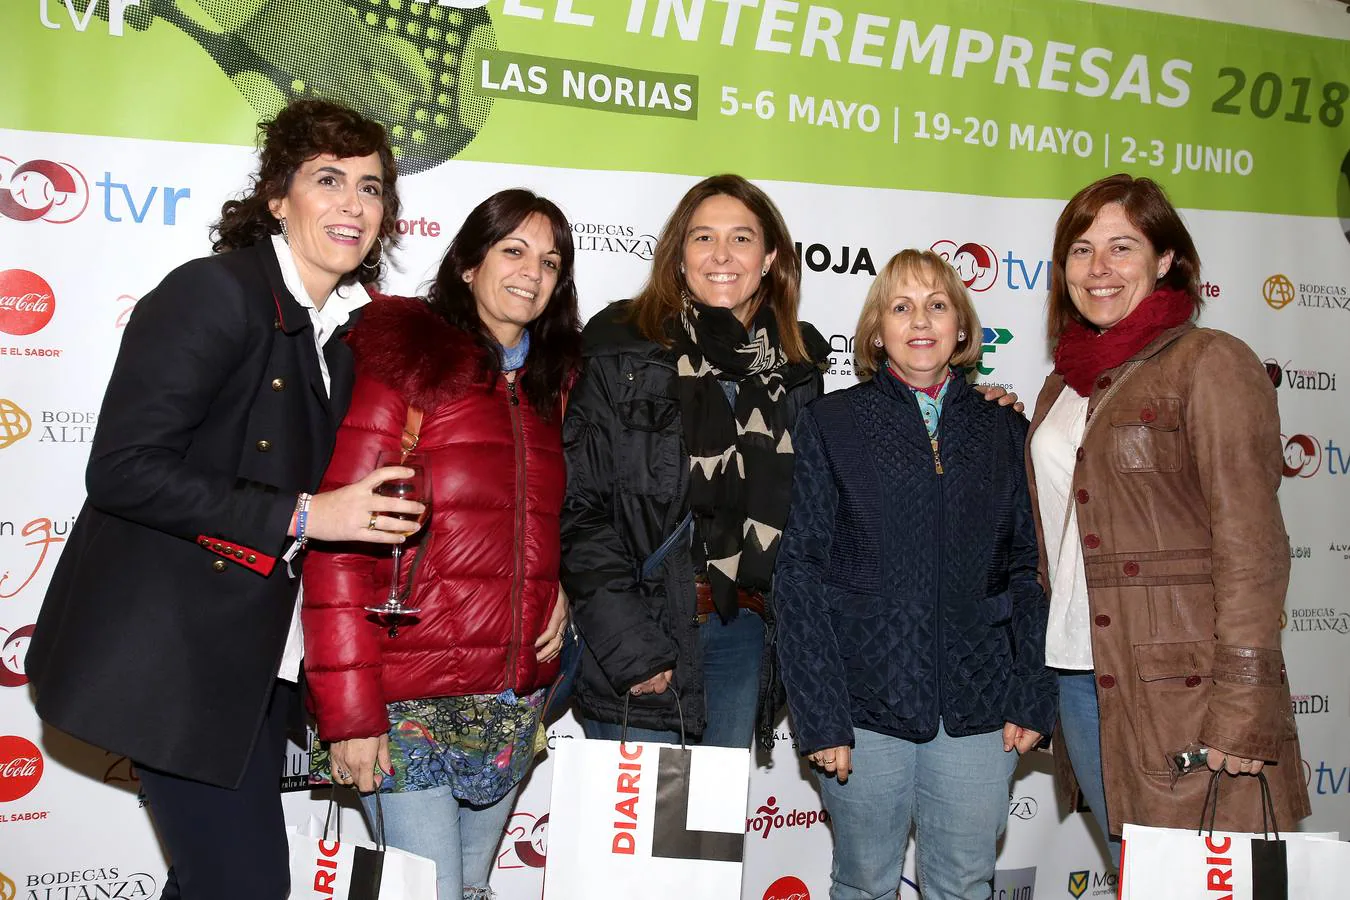 Fotos: El XIV Torneo Interempresas de Pádel reúne a 52 firmas comerciales locales